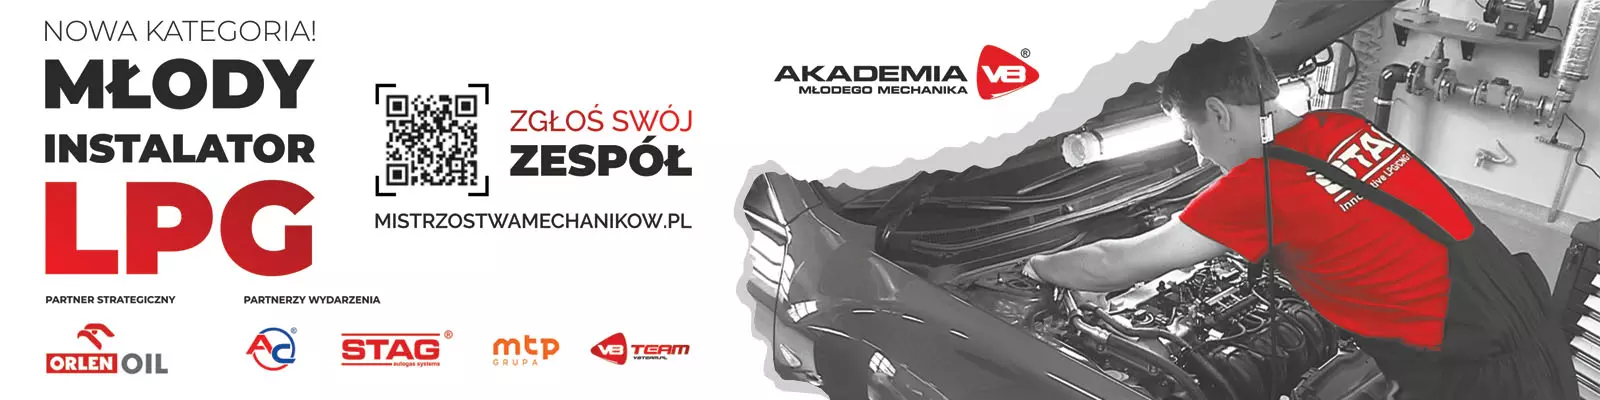 AC SA, właściciel marki STAG, dołącza do Ogólnopolskich Mistrzostw Mechaników